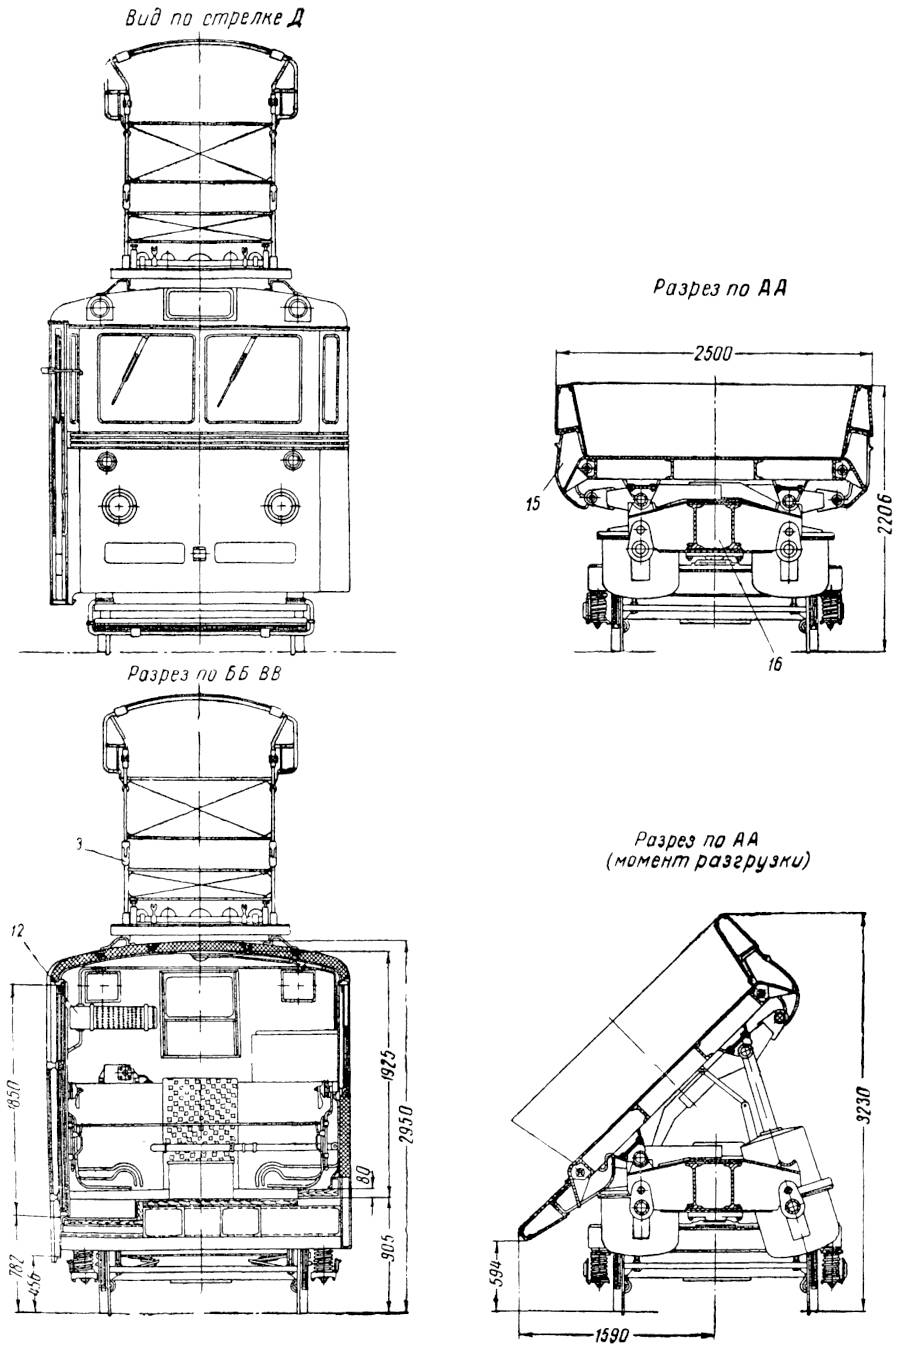 Моторный грузовой трамвайный вагон типа Думпкар: 1 – зеркало водителя; 2 – предохранительный буфер; 3 – пневматический цилиндр, опрокидывающий платформу; 4 – узел подвески цилиндра; 5 – рычажно-тормозная передача; 6 – опрокидывающаяся платформа; 7 – тележка вагона; 8 – кожух для пневматической аппаратуры; 9 – узел оси поворота платформы; 10 – моторная кабина; 11 – контроллер; 12 – сопротивление для цепи освещения; 13 – пантограф; 14 – колонка ручного тормоза; 15 – борт платформы; 16 – рама вагона